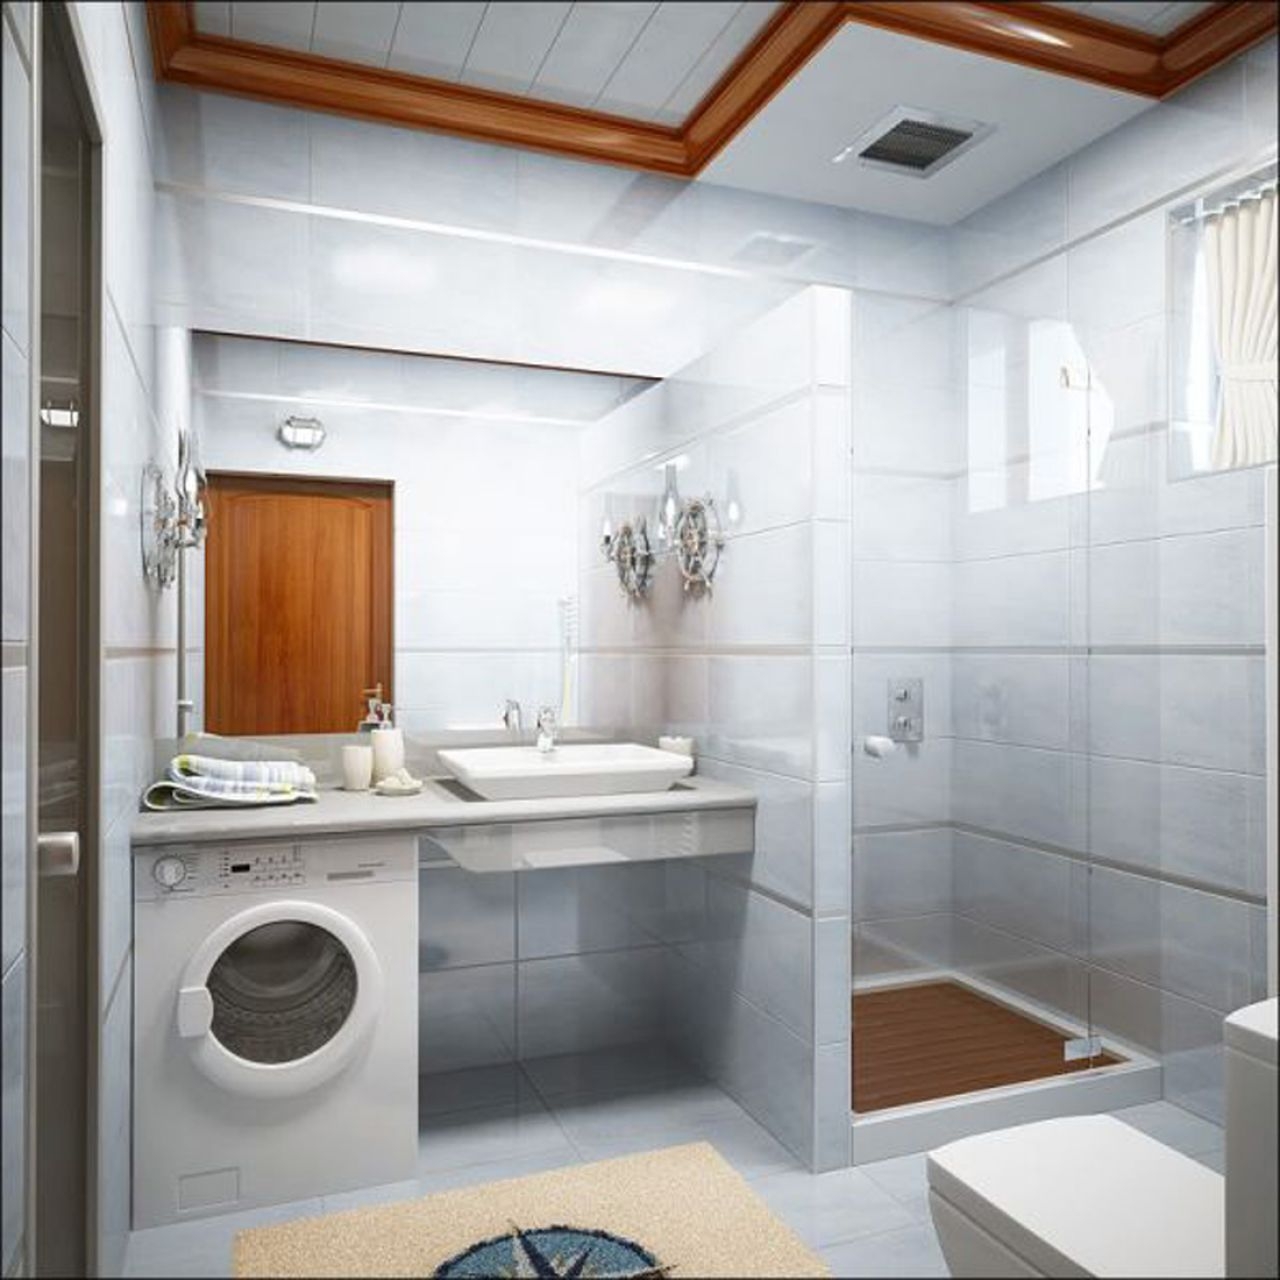 Badkamer van 6 m² met douche